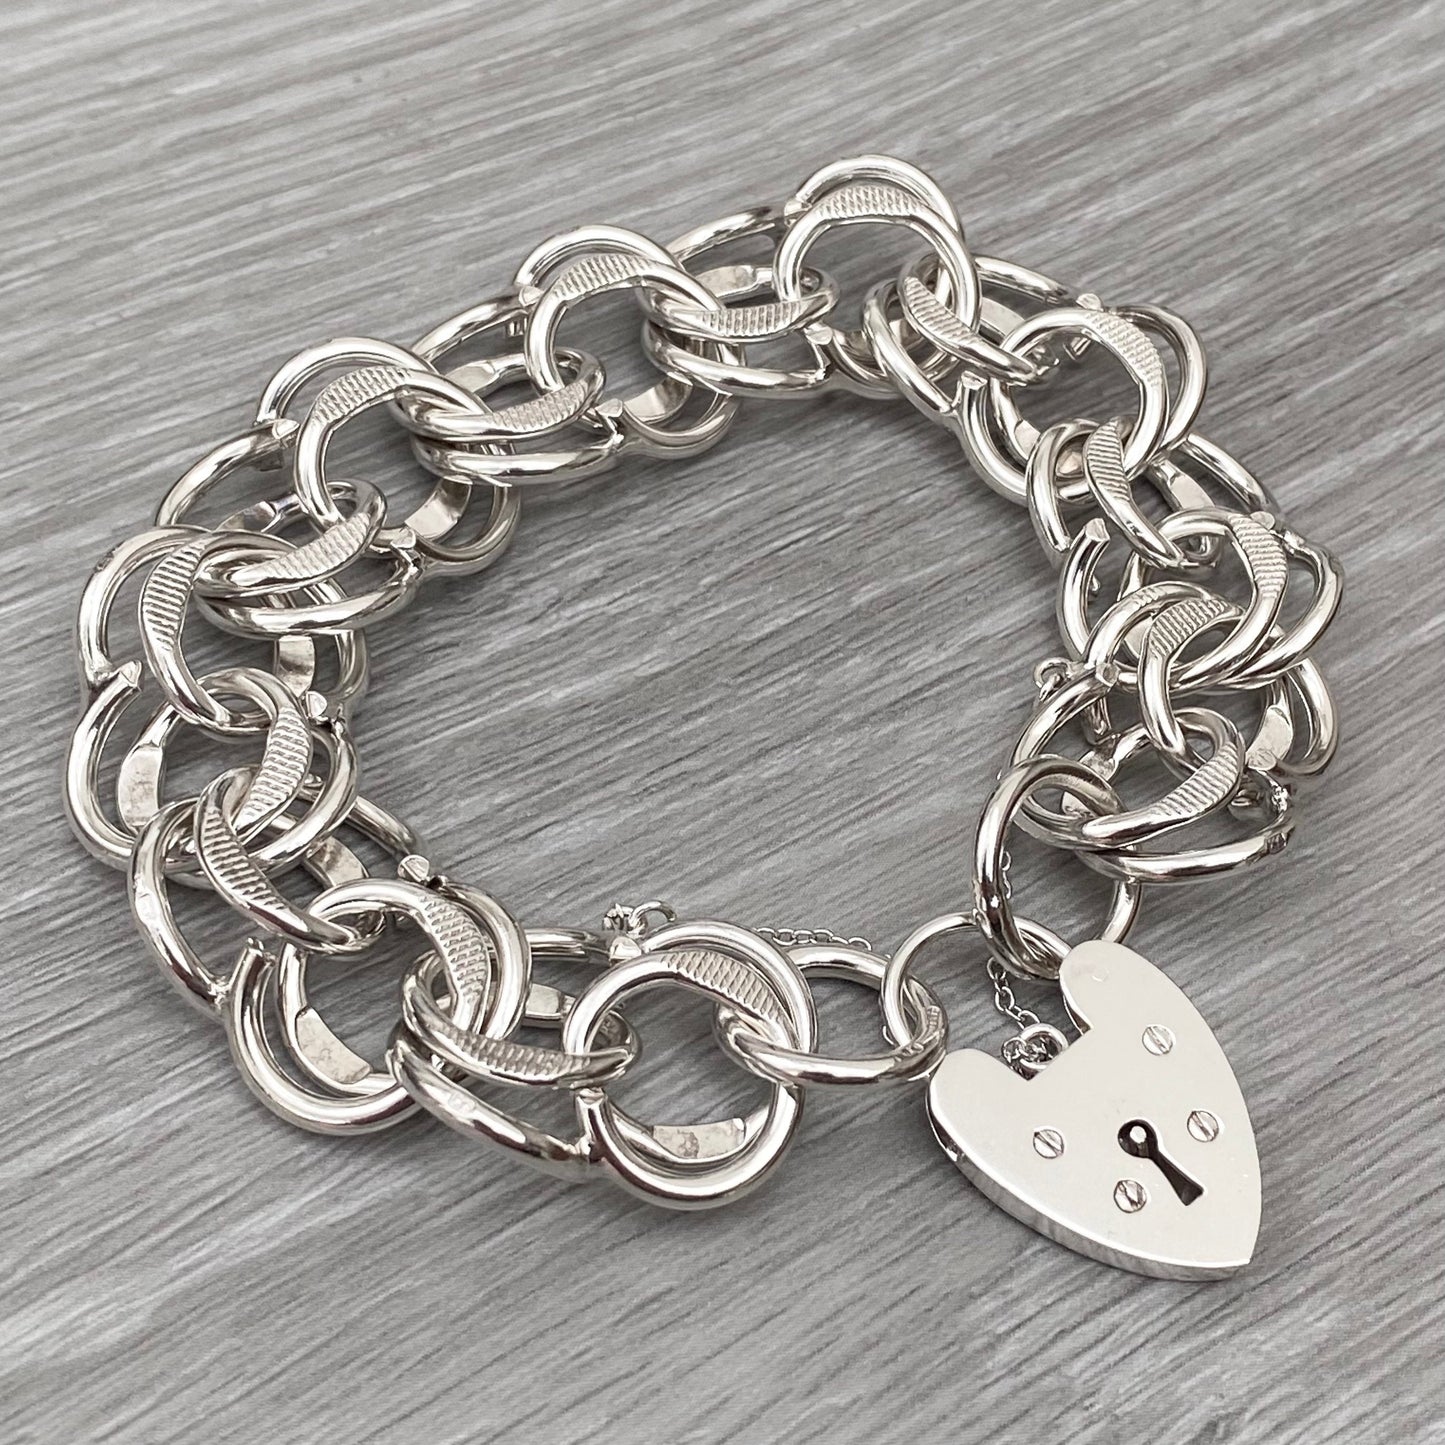 Vintage silver heart padlock fancy wide link bracelet - 1970s - 7.5 inch length